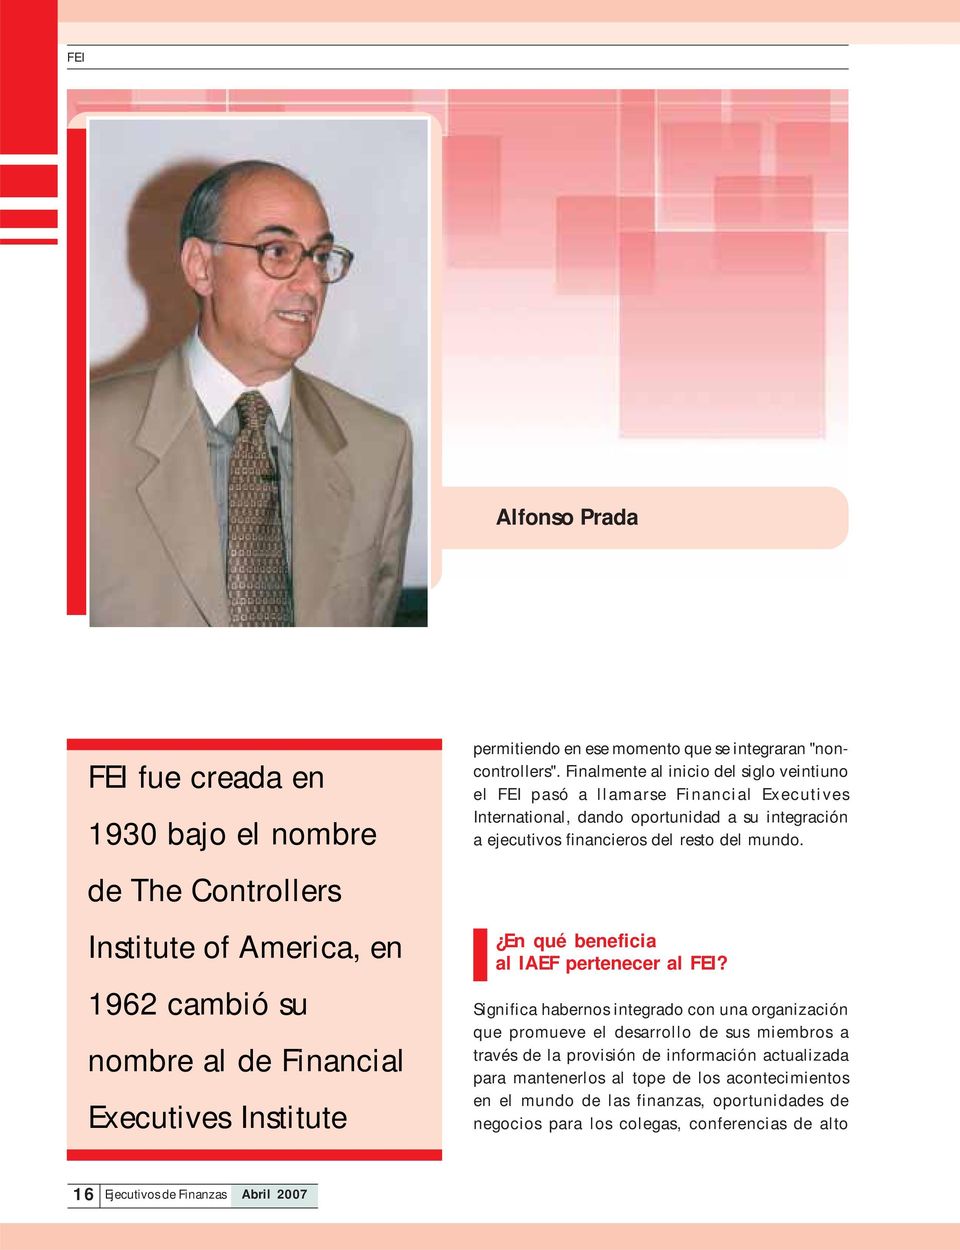 Finalmente al inicio del siglo veintiuno el FEI pasó a llamarse Financial Executives International, dando oportunidad a su integración a ejecutivos financieros del resto del mundo.